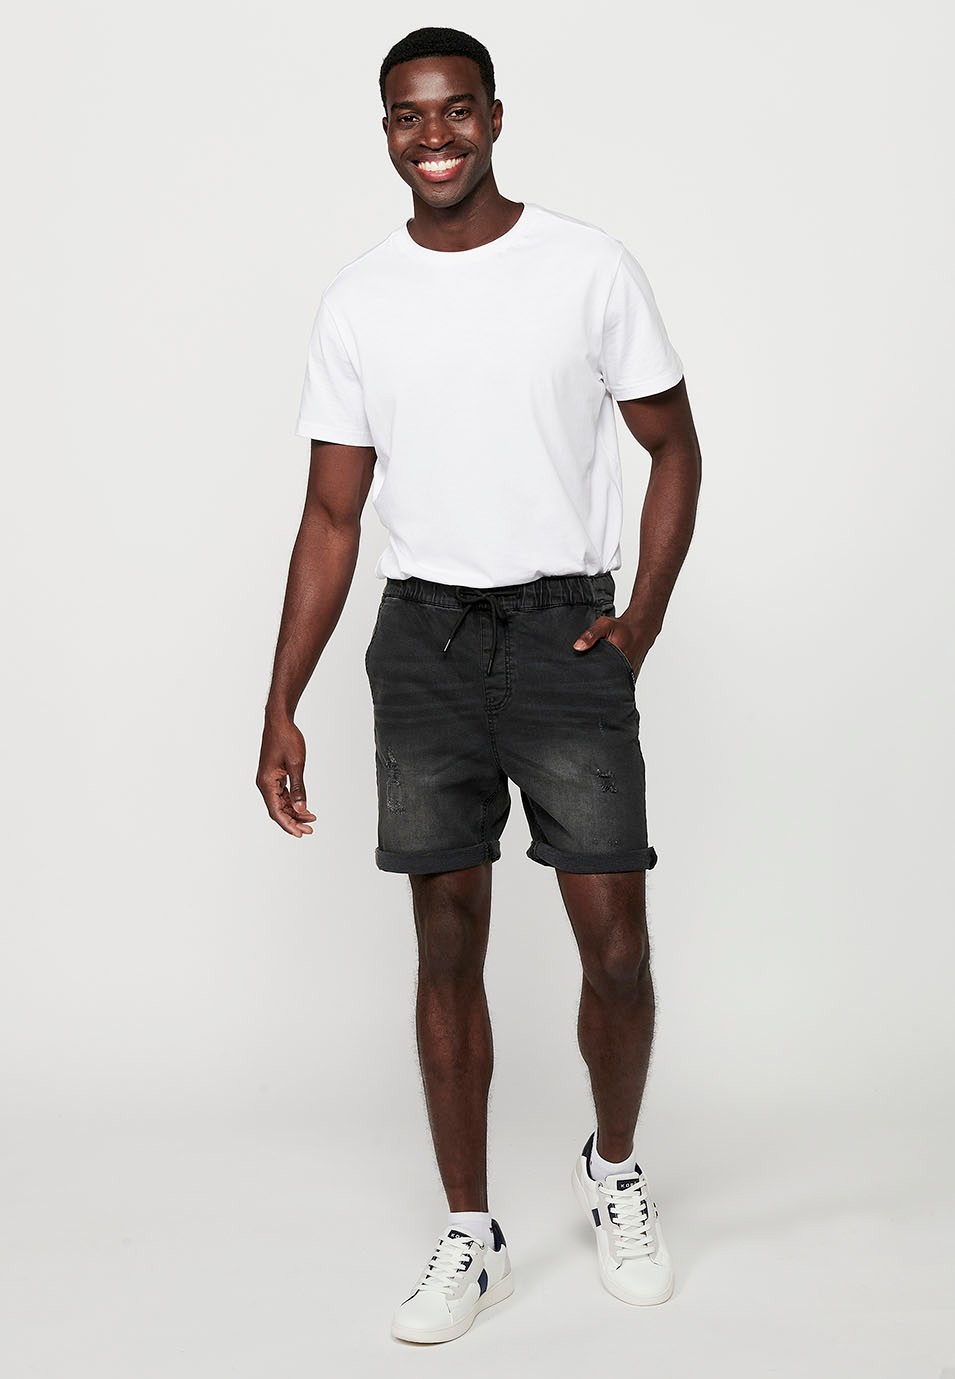 Bermuda Jogger finition denim, coloris noir pour homme